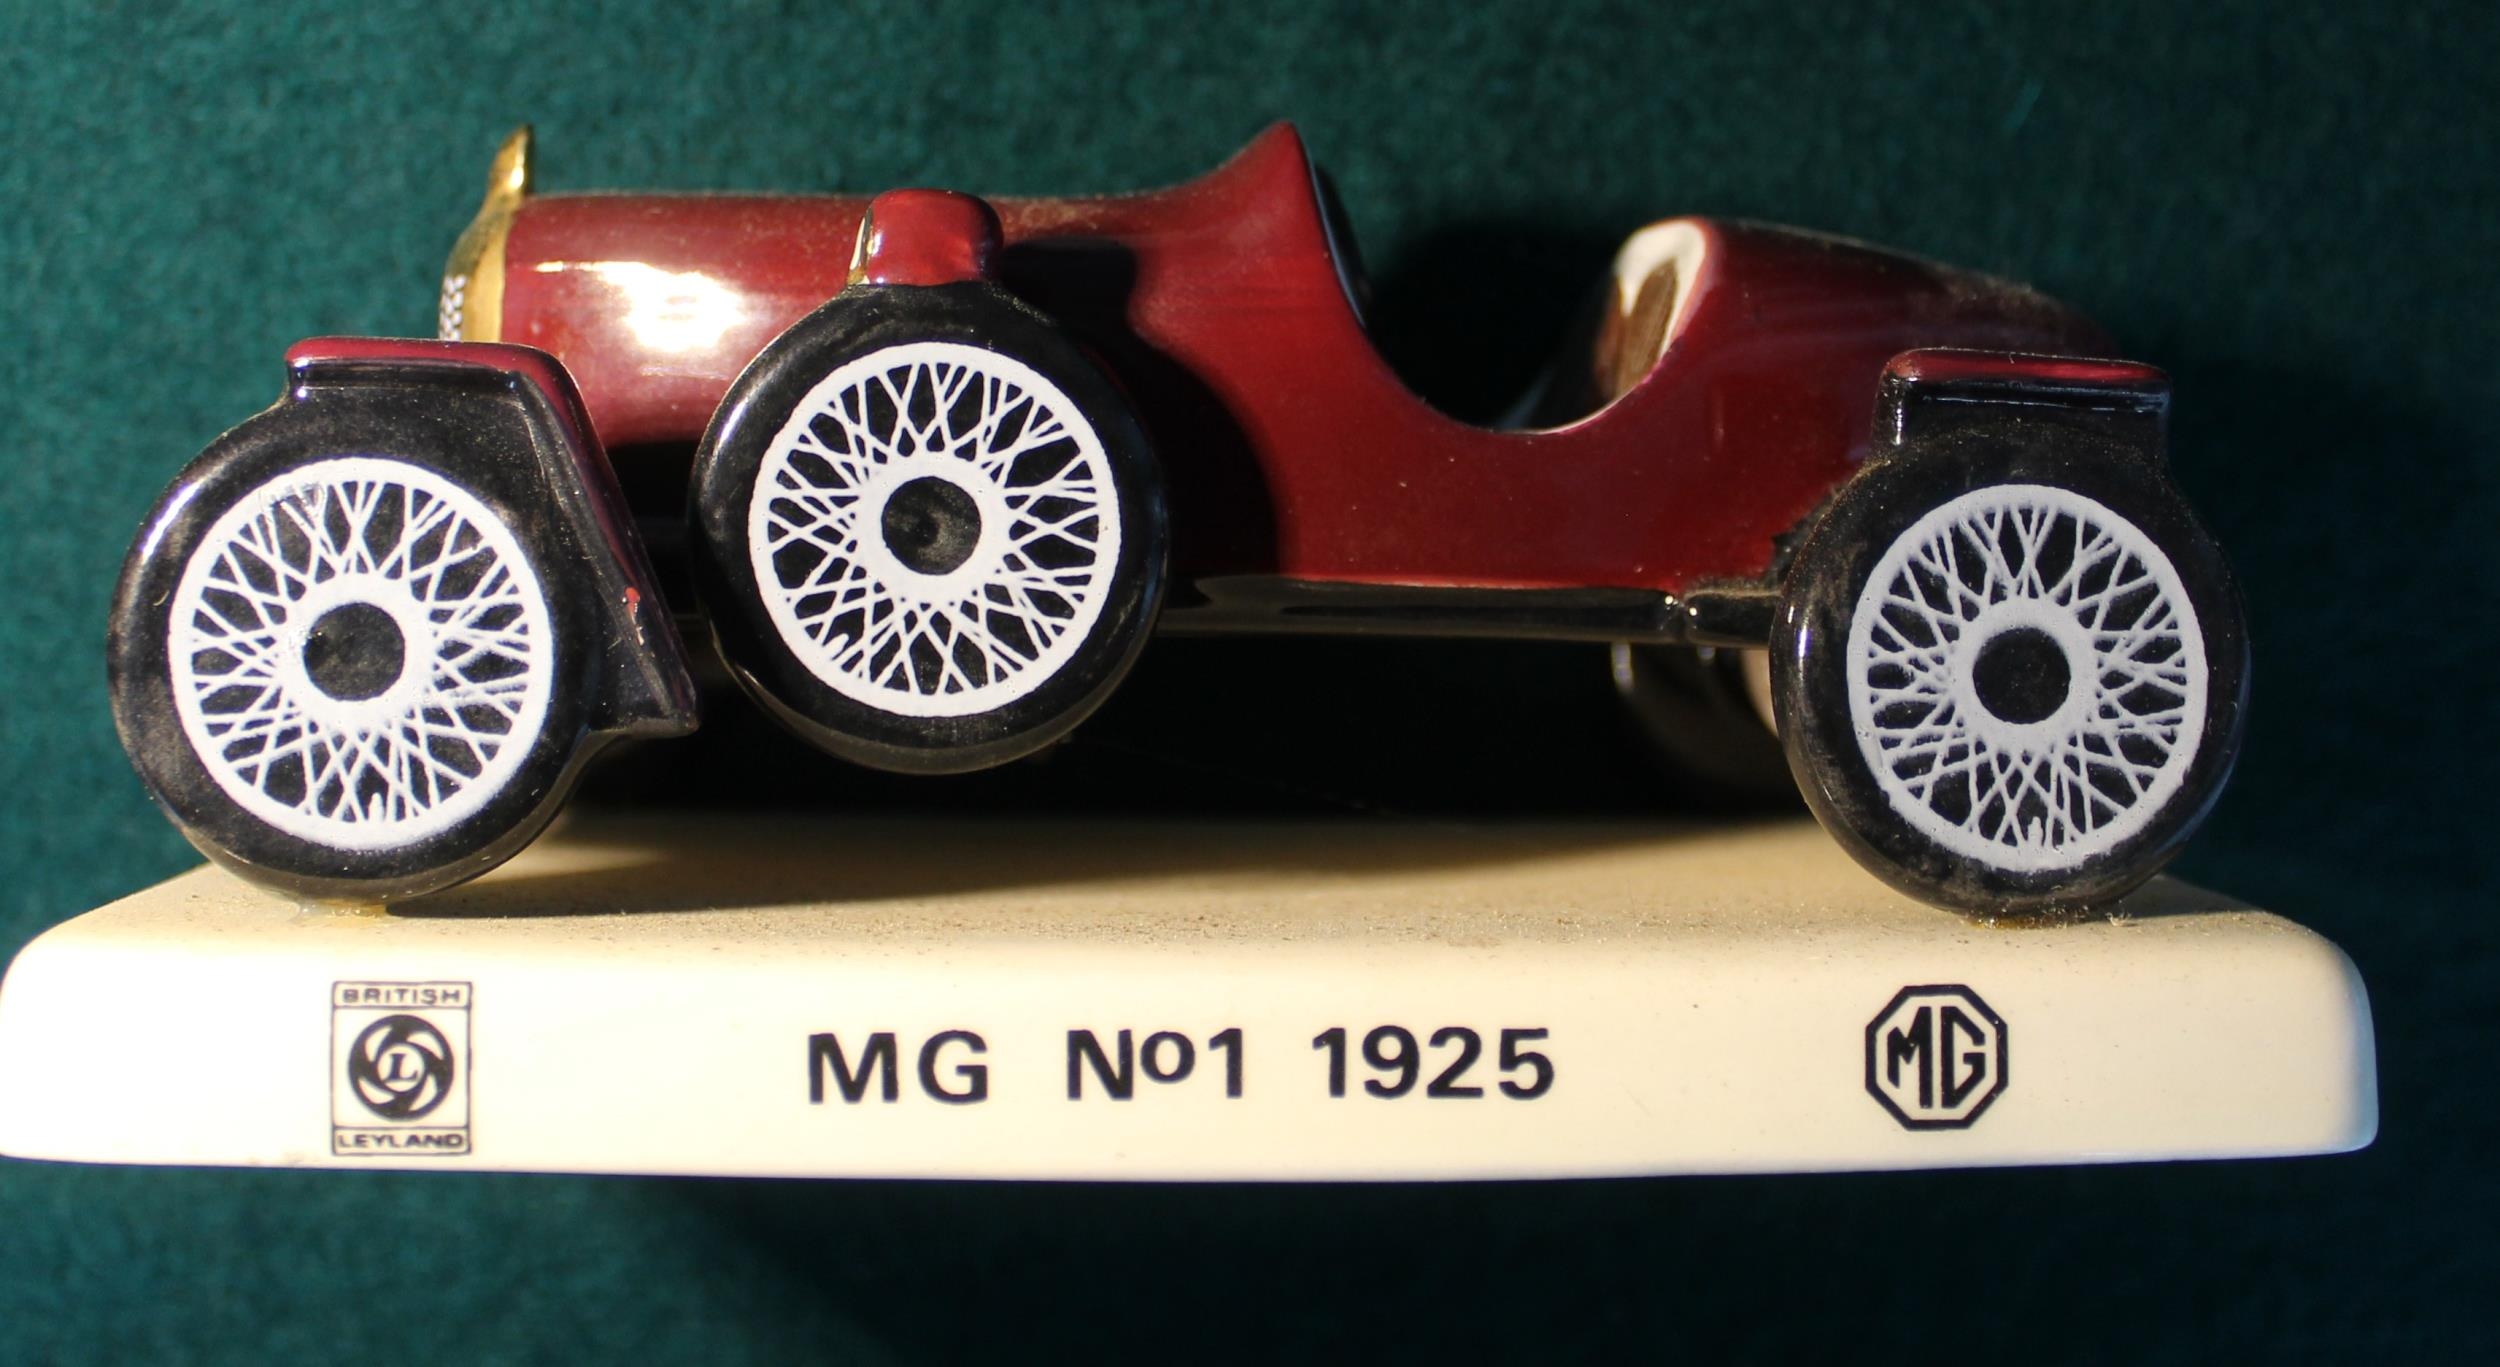 Rare Carlton Ware MG No.1 1925 model - Image 2 of 2